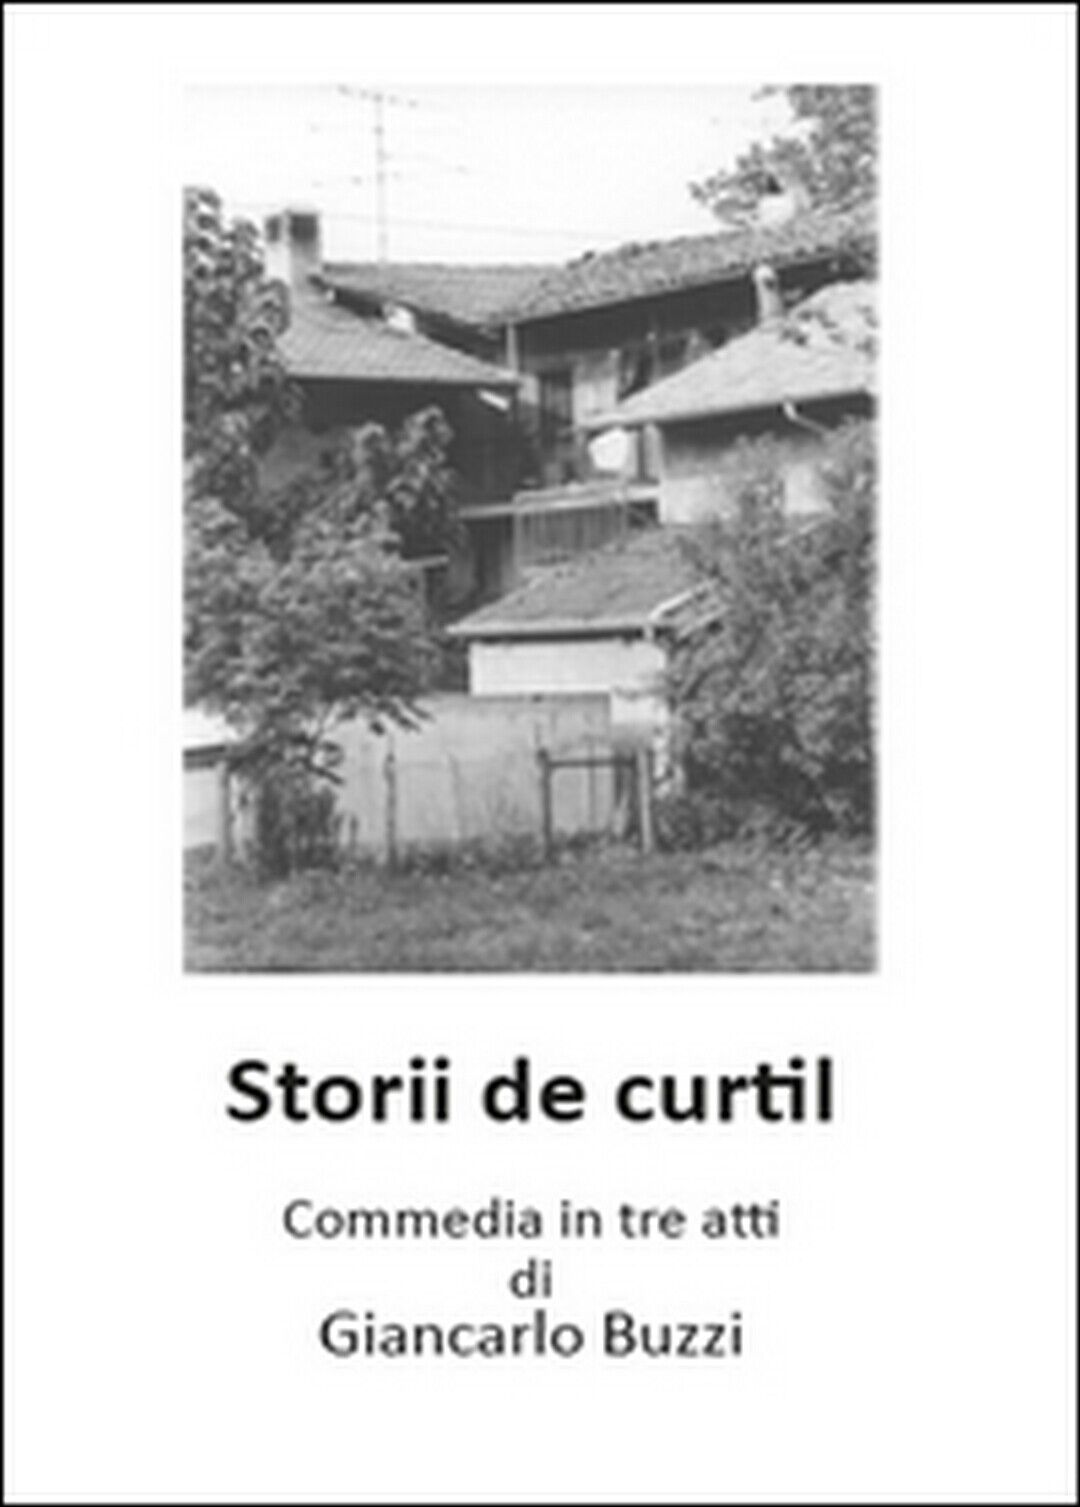 Storii de Curtil. Commedia in tre atti  di Giancarlo Buzzi,  2015,  Youcanprint